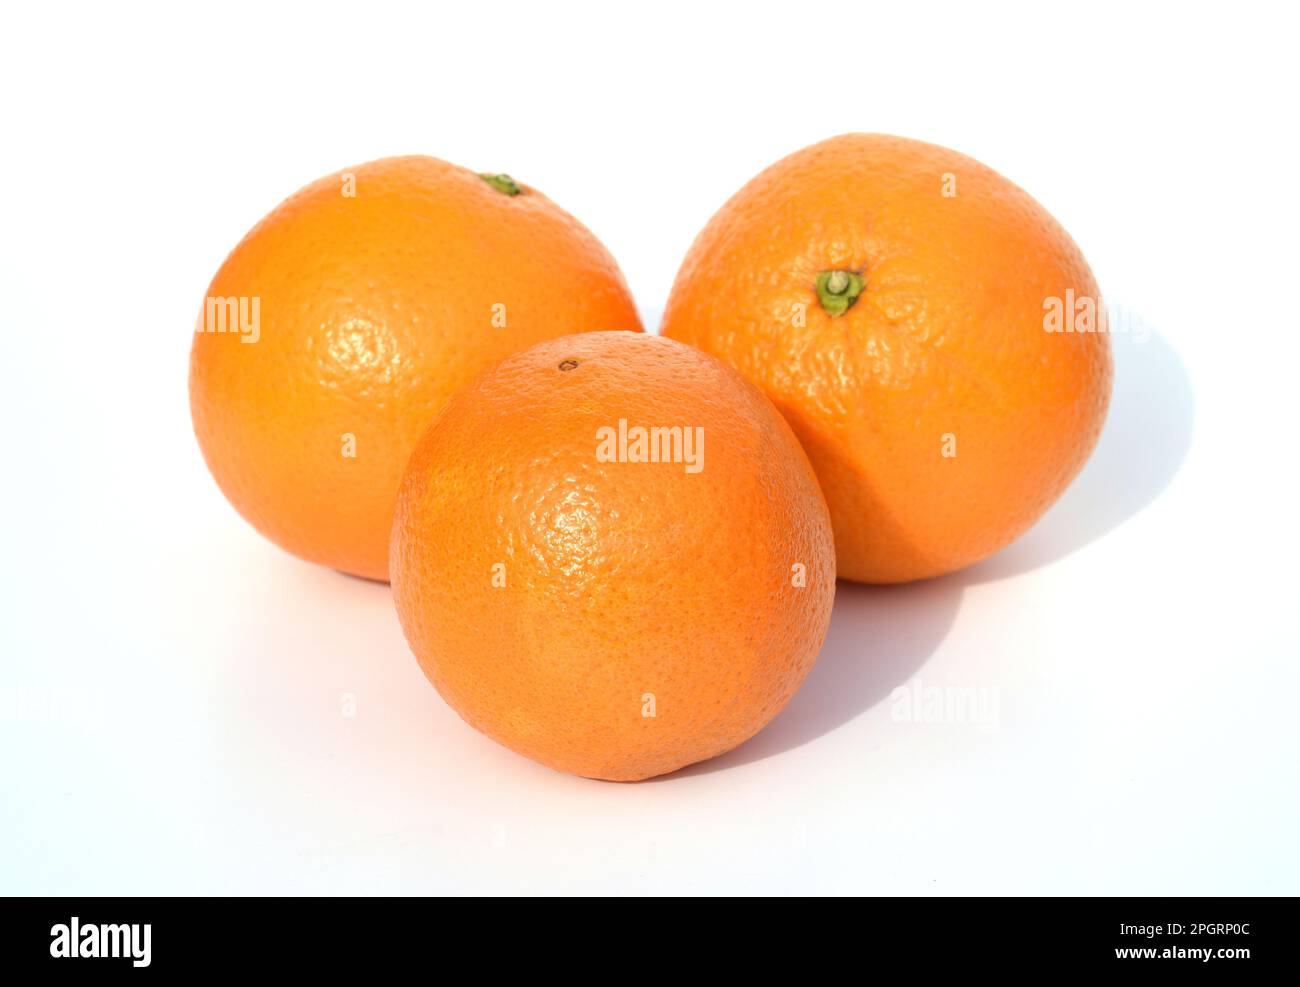 Orangenbaum, Citrus sinensis, ist eine exotische Frucht, die auch als Duftgeber verwendet wird. Orange, Baum, Citrus sinensis, ist ein Exot Stockfoto